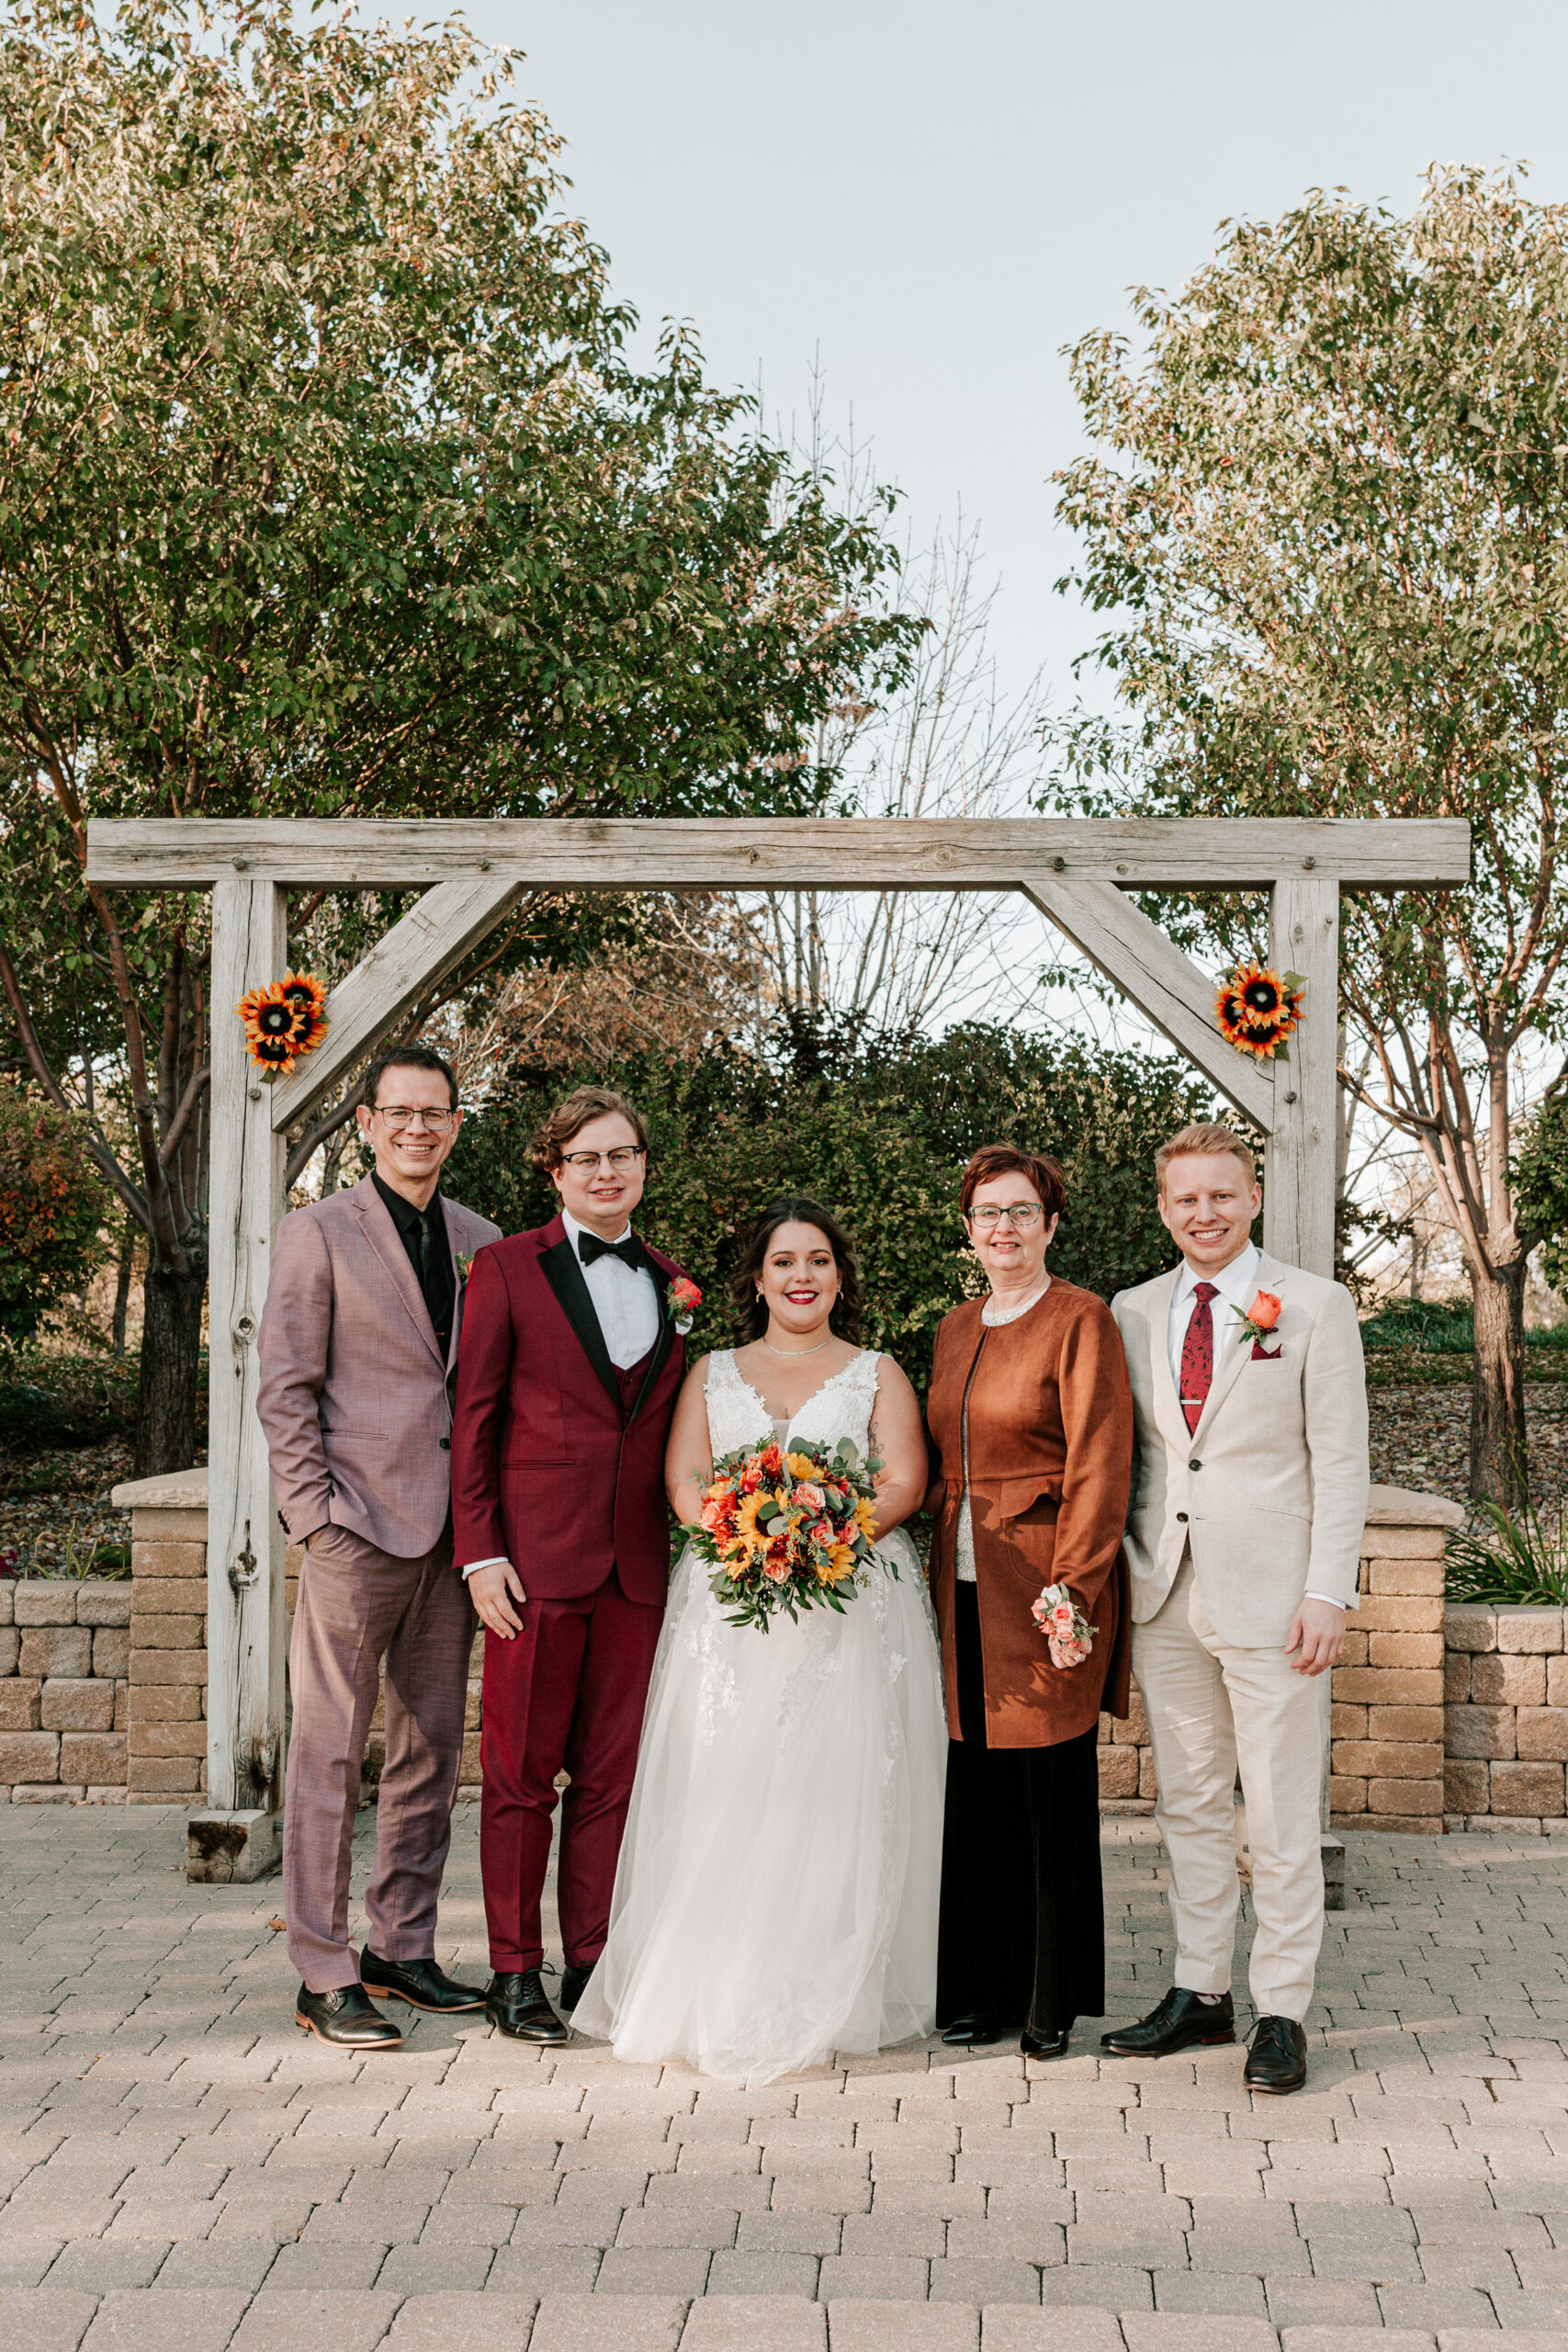 Family Wedding Photos